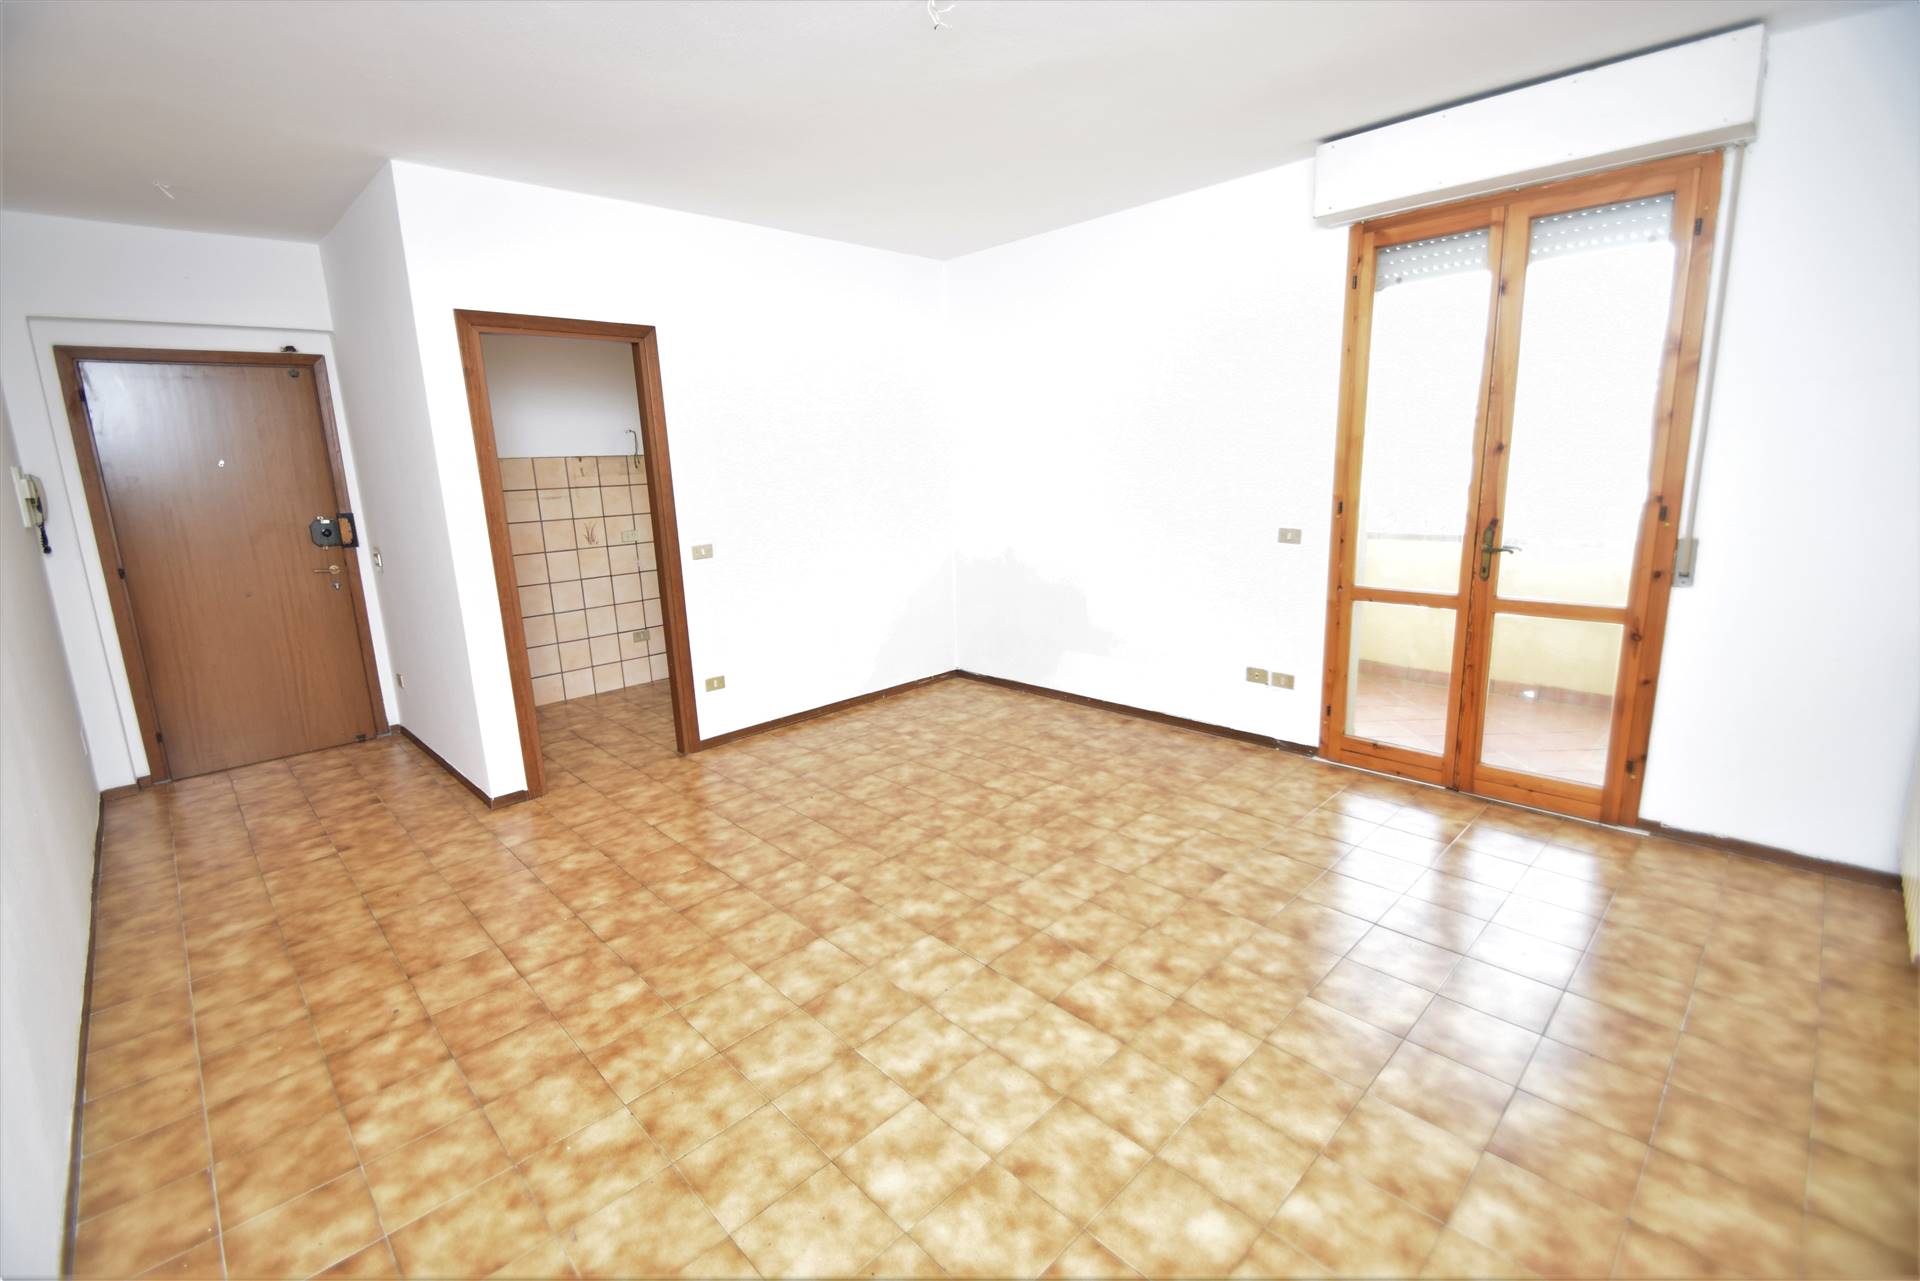 Appartamento in vendita a Uzzano, 3 locali, prezzo € 64.000 | CambioCasa.it